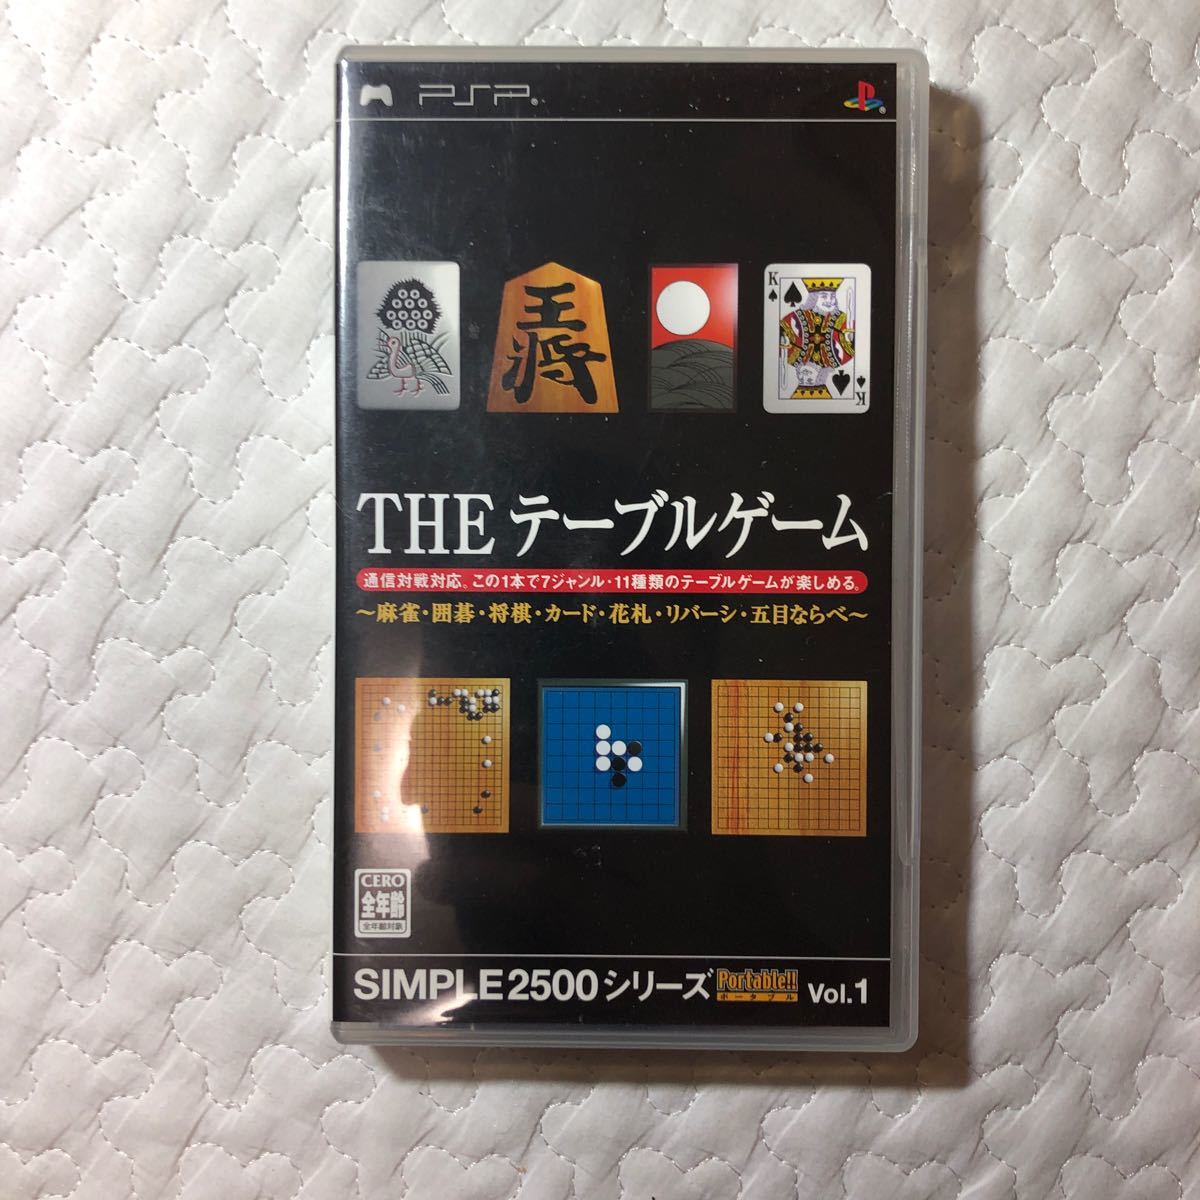 【PSP】 SIMPLE2500シリーズポータブル Vol.1 THE テーブルゲーム